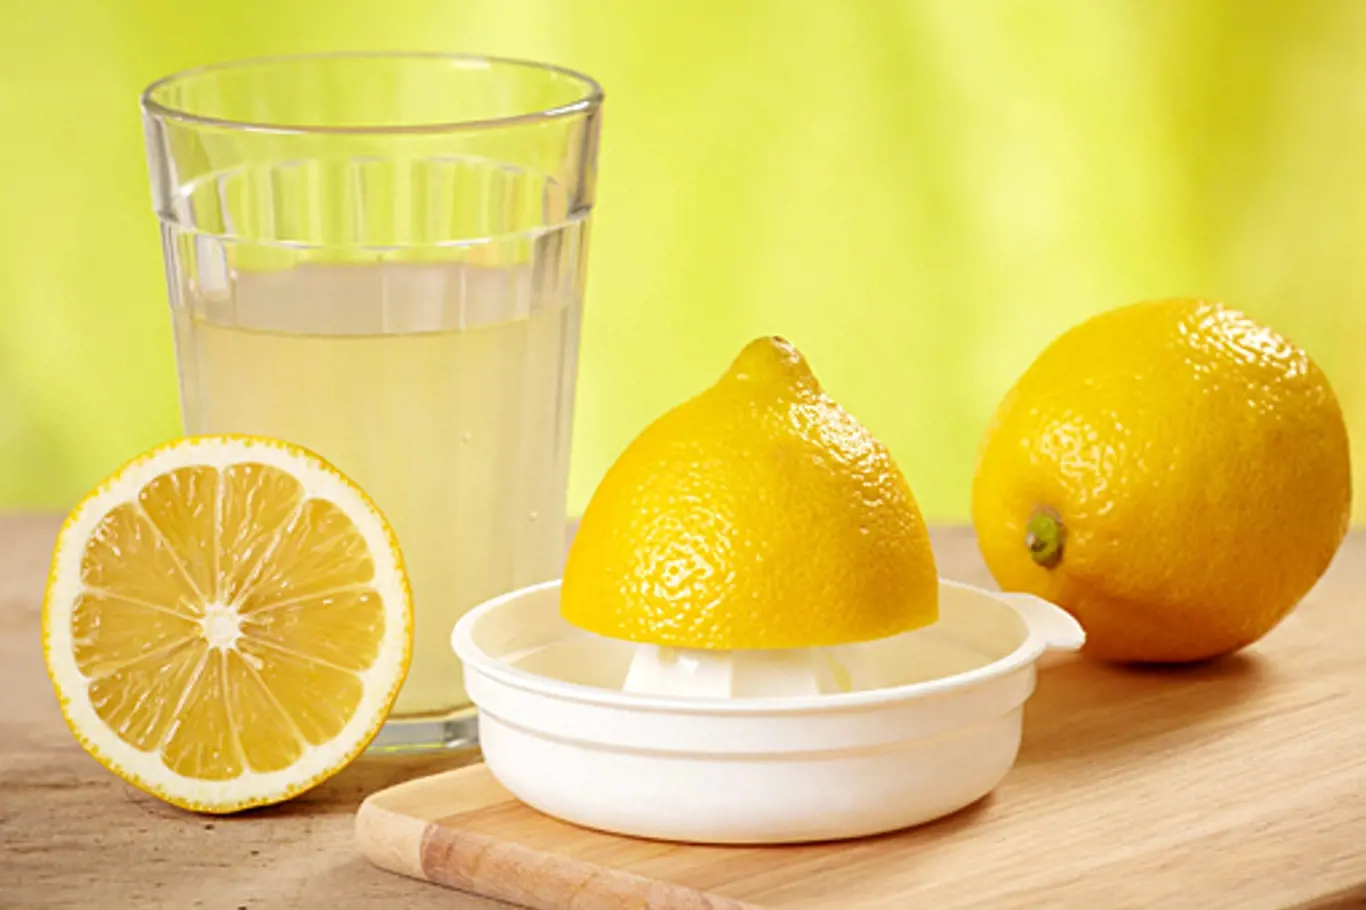 citrónová šťáva dokáže zbavit bradavic